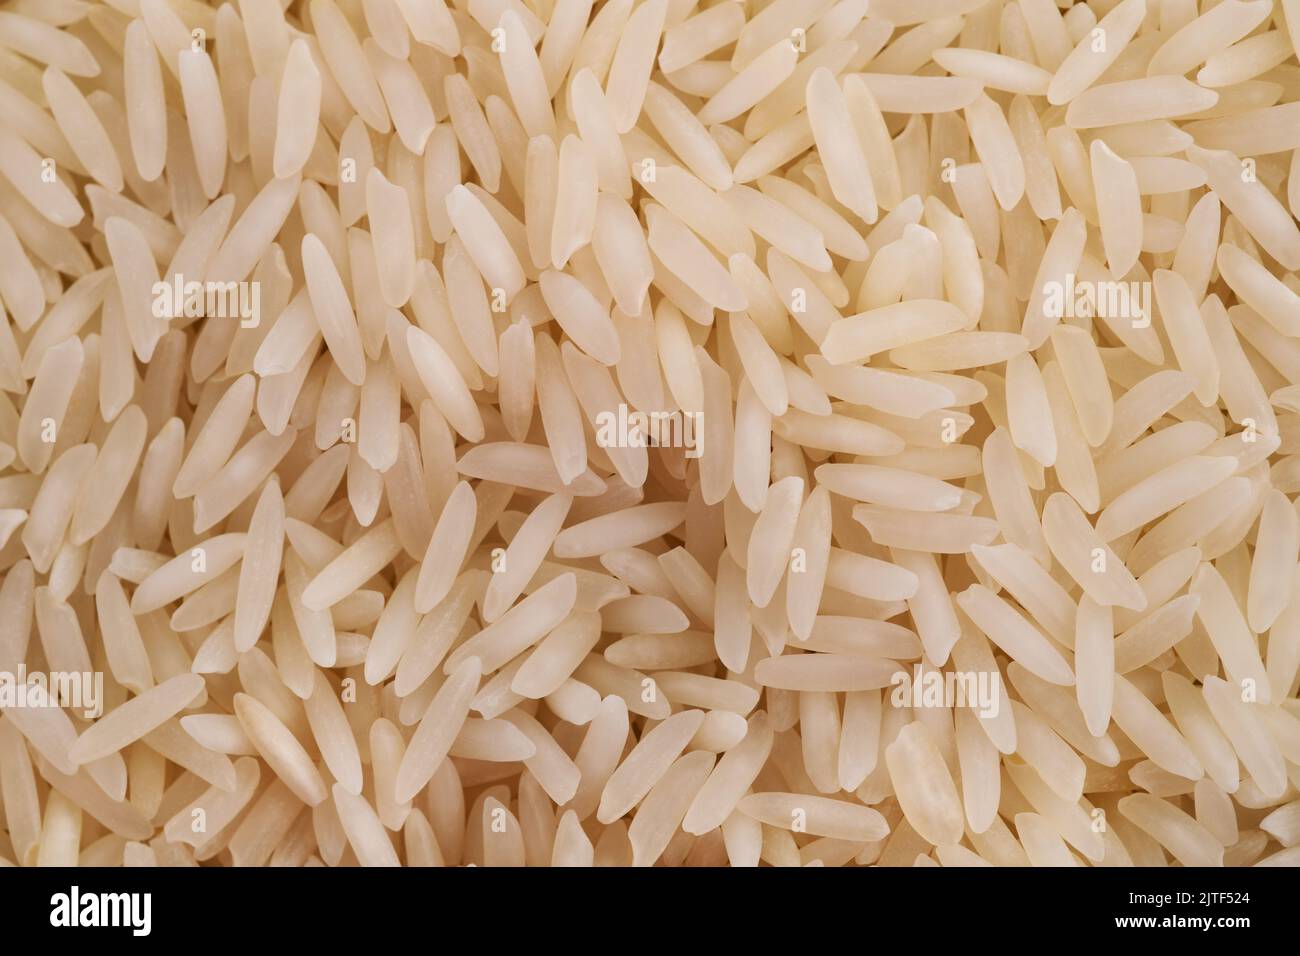 Basmati rice background Stock Photo